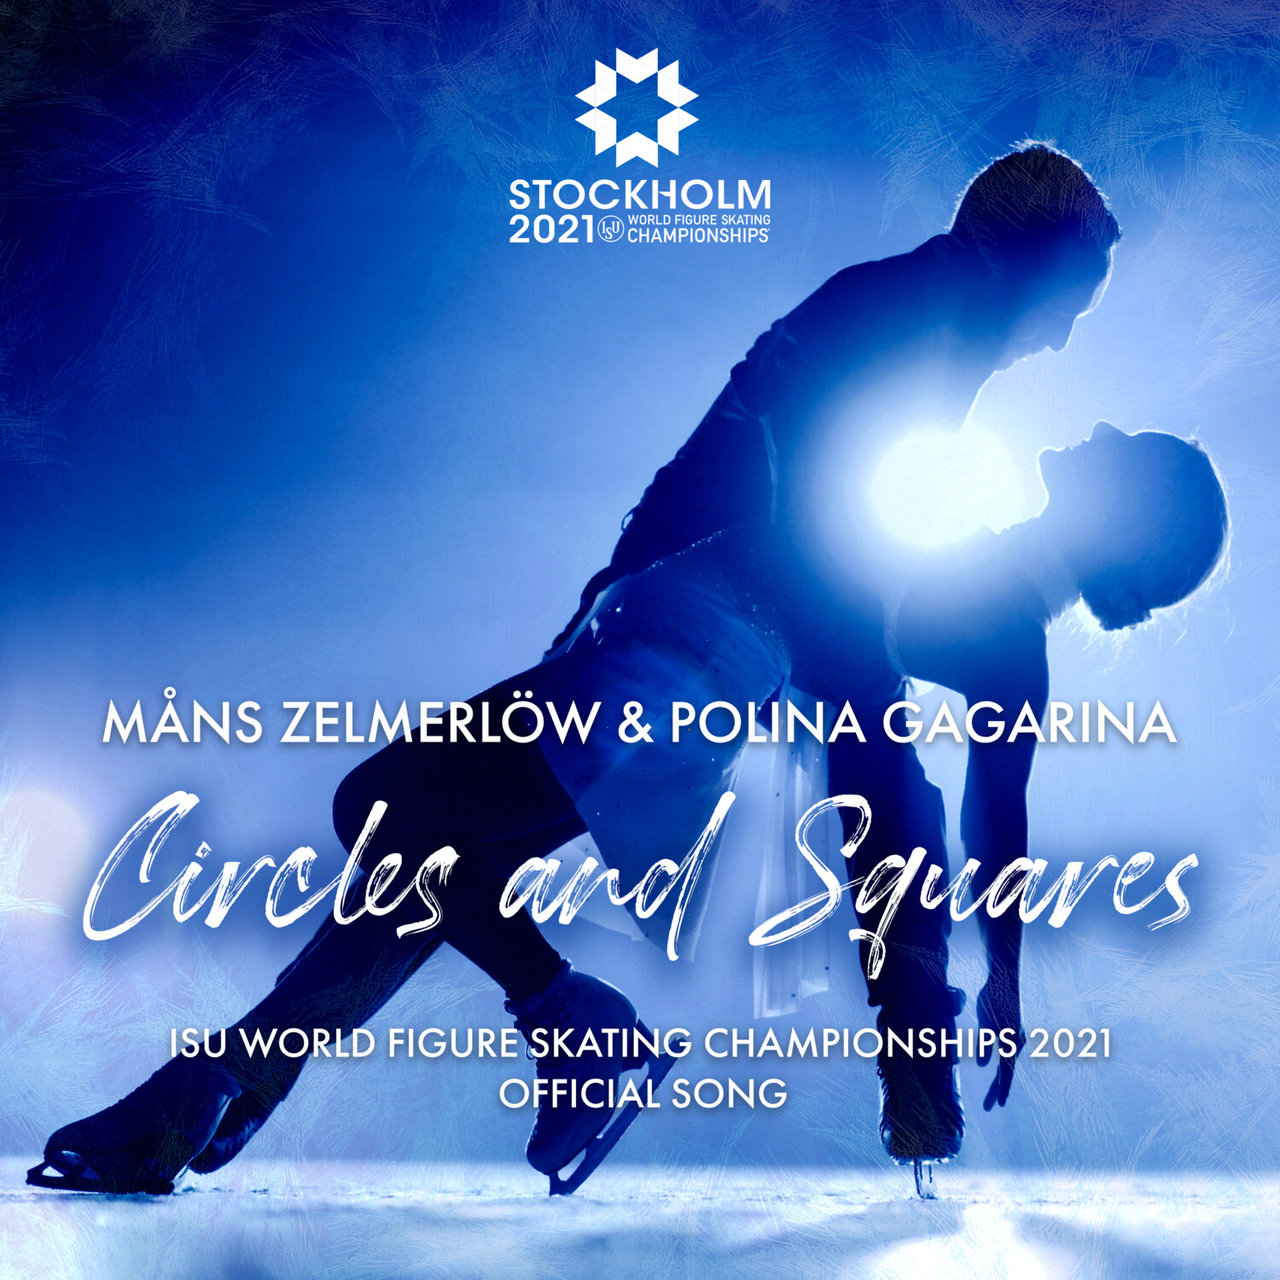 Måns Zelmerlöw & Polina Gagarina — Circles and Squares cover artwork